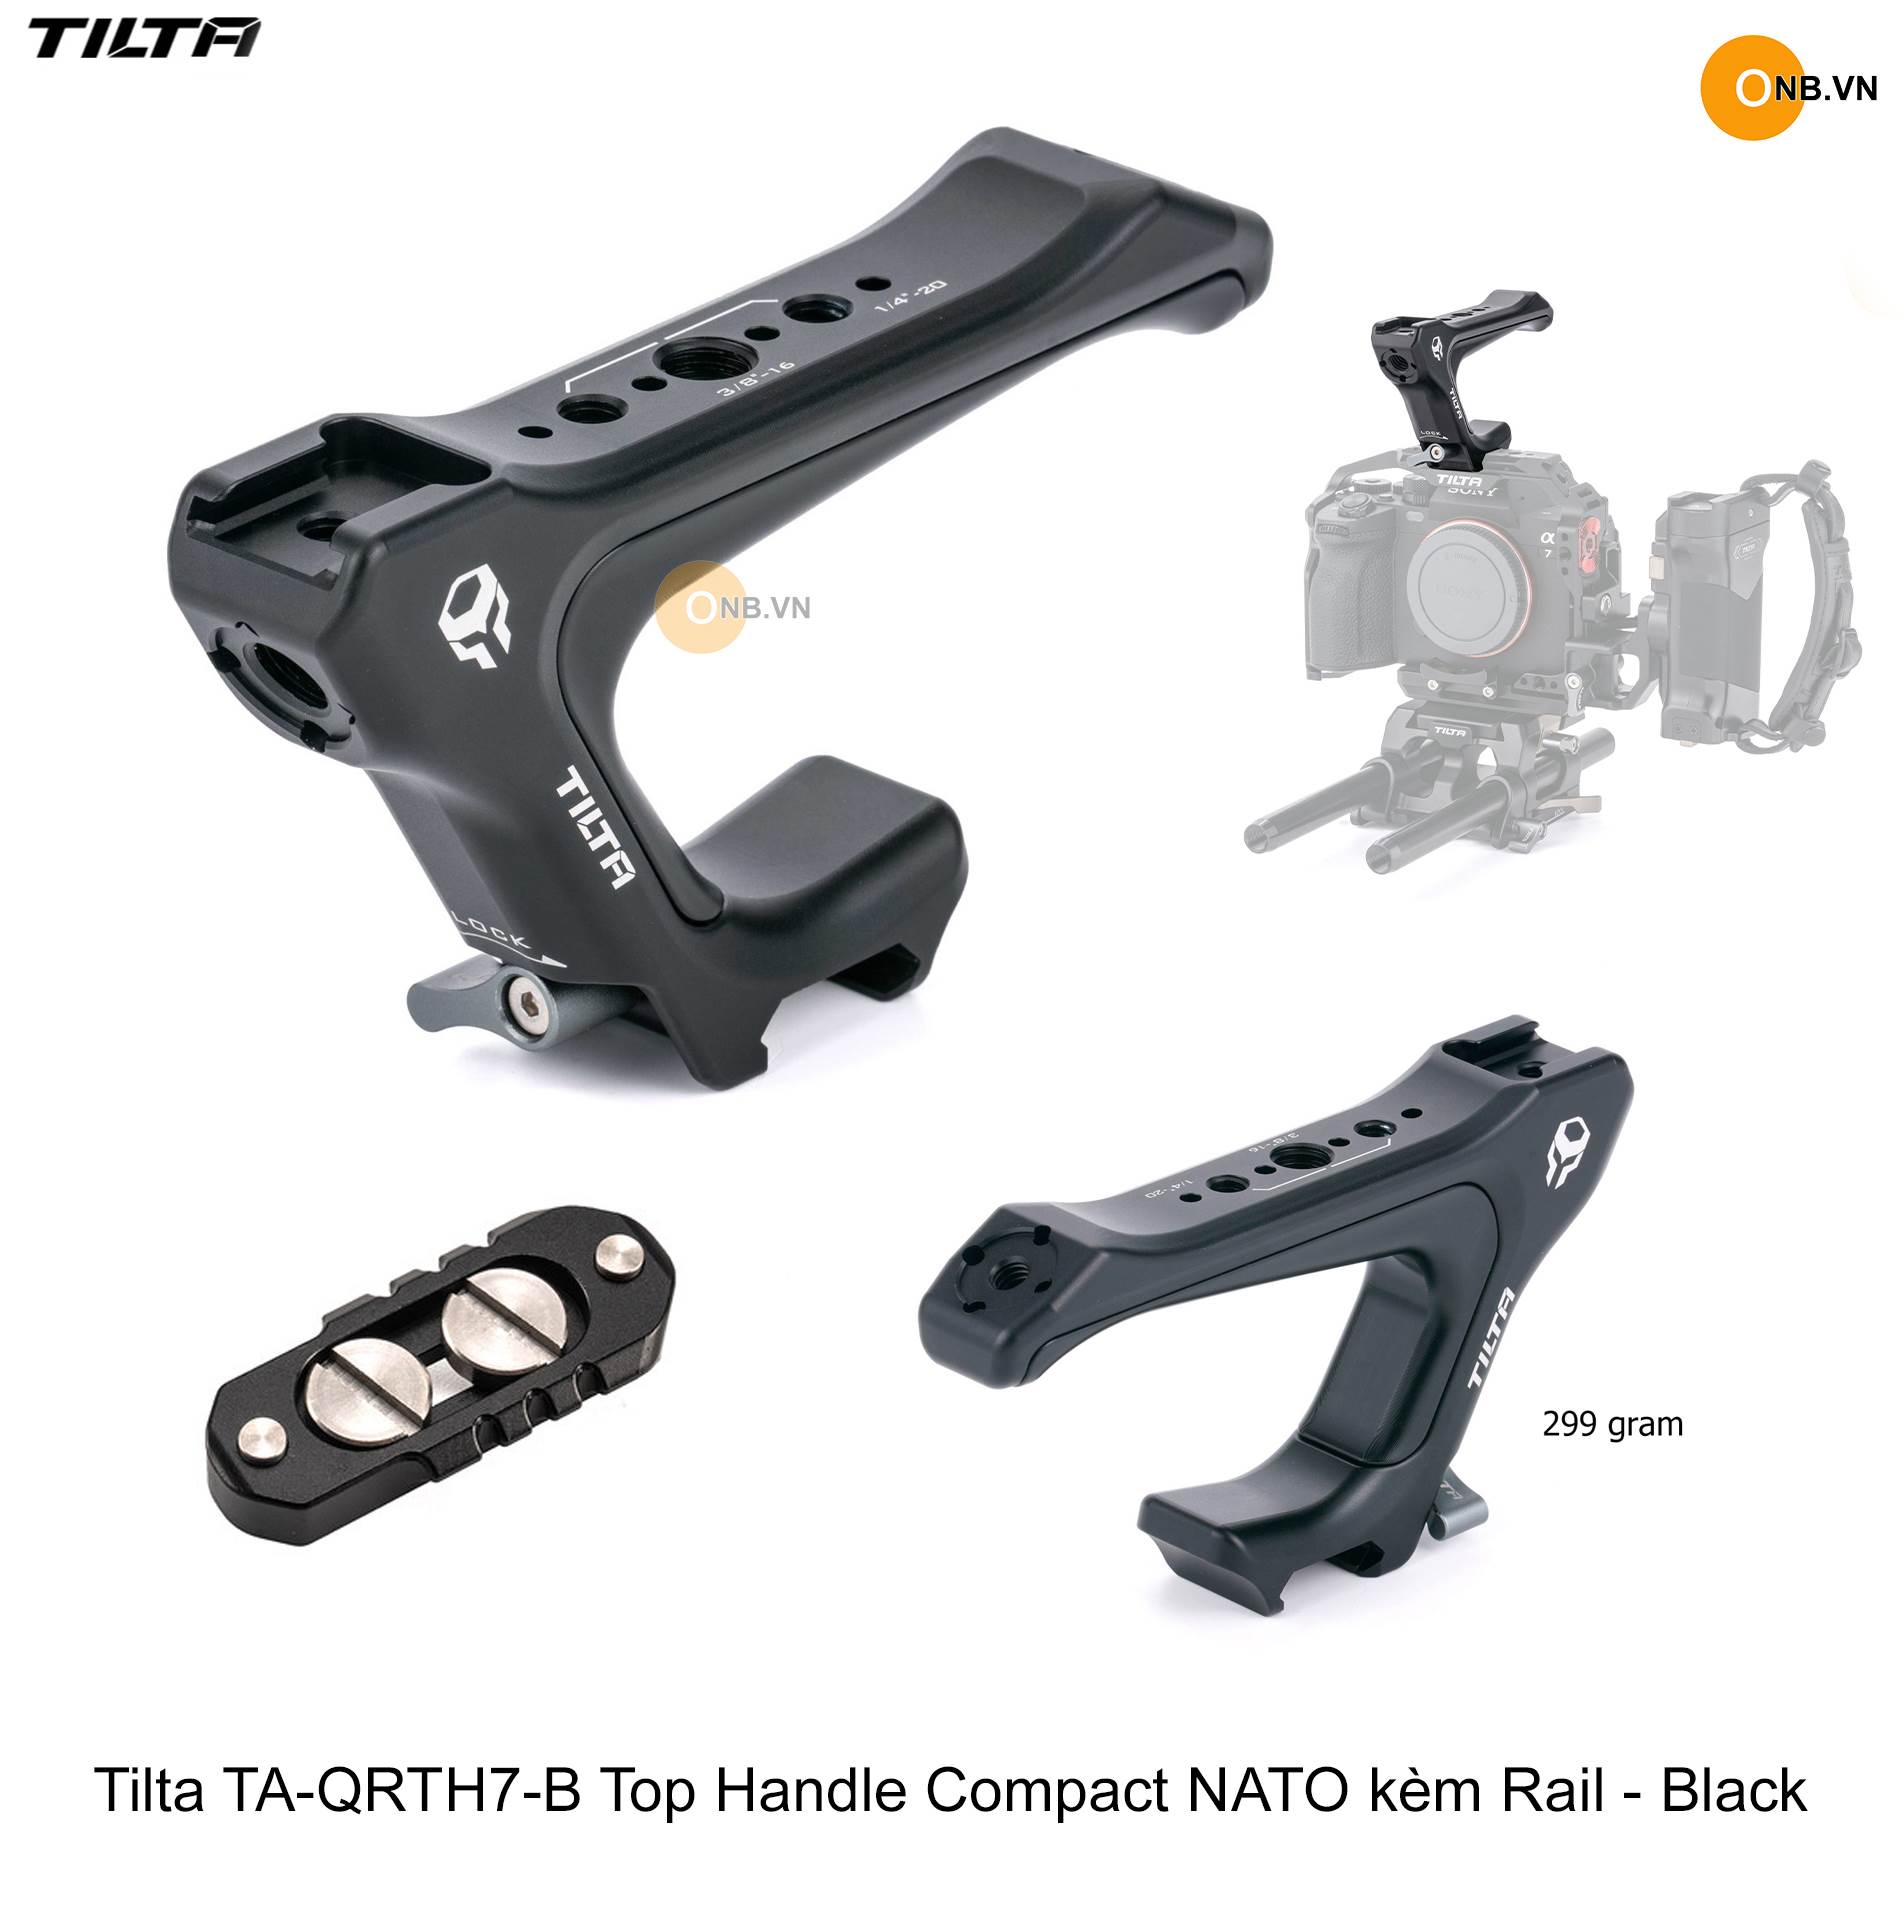 Tilta Top Handle Compact NATO kèm Rail - Black